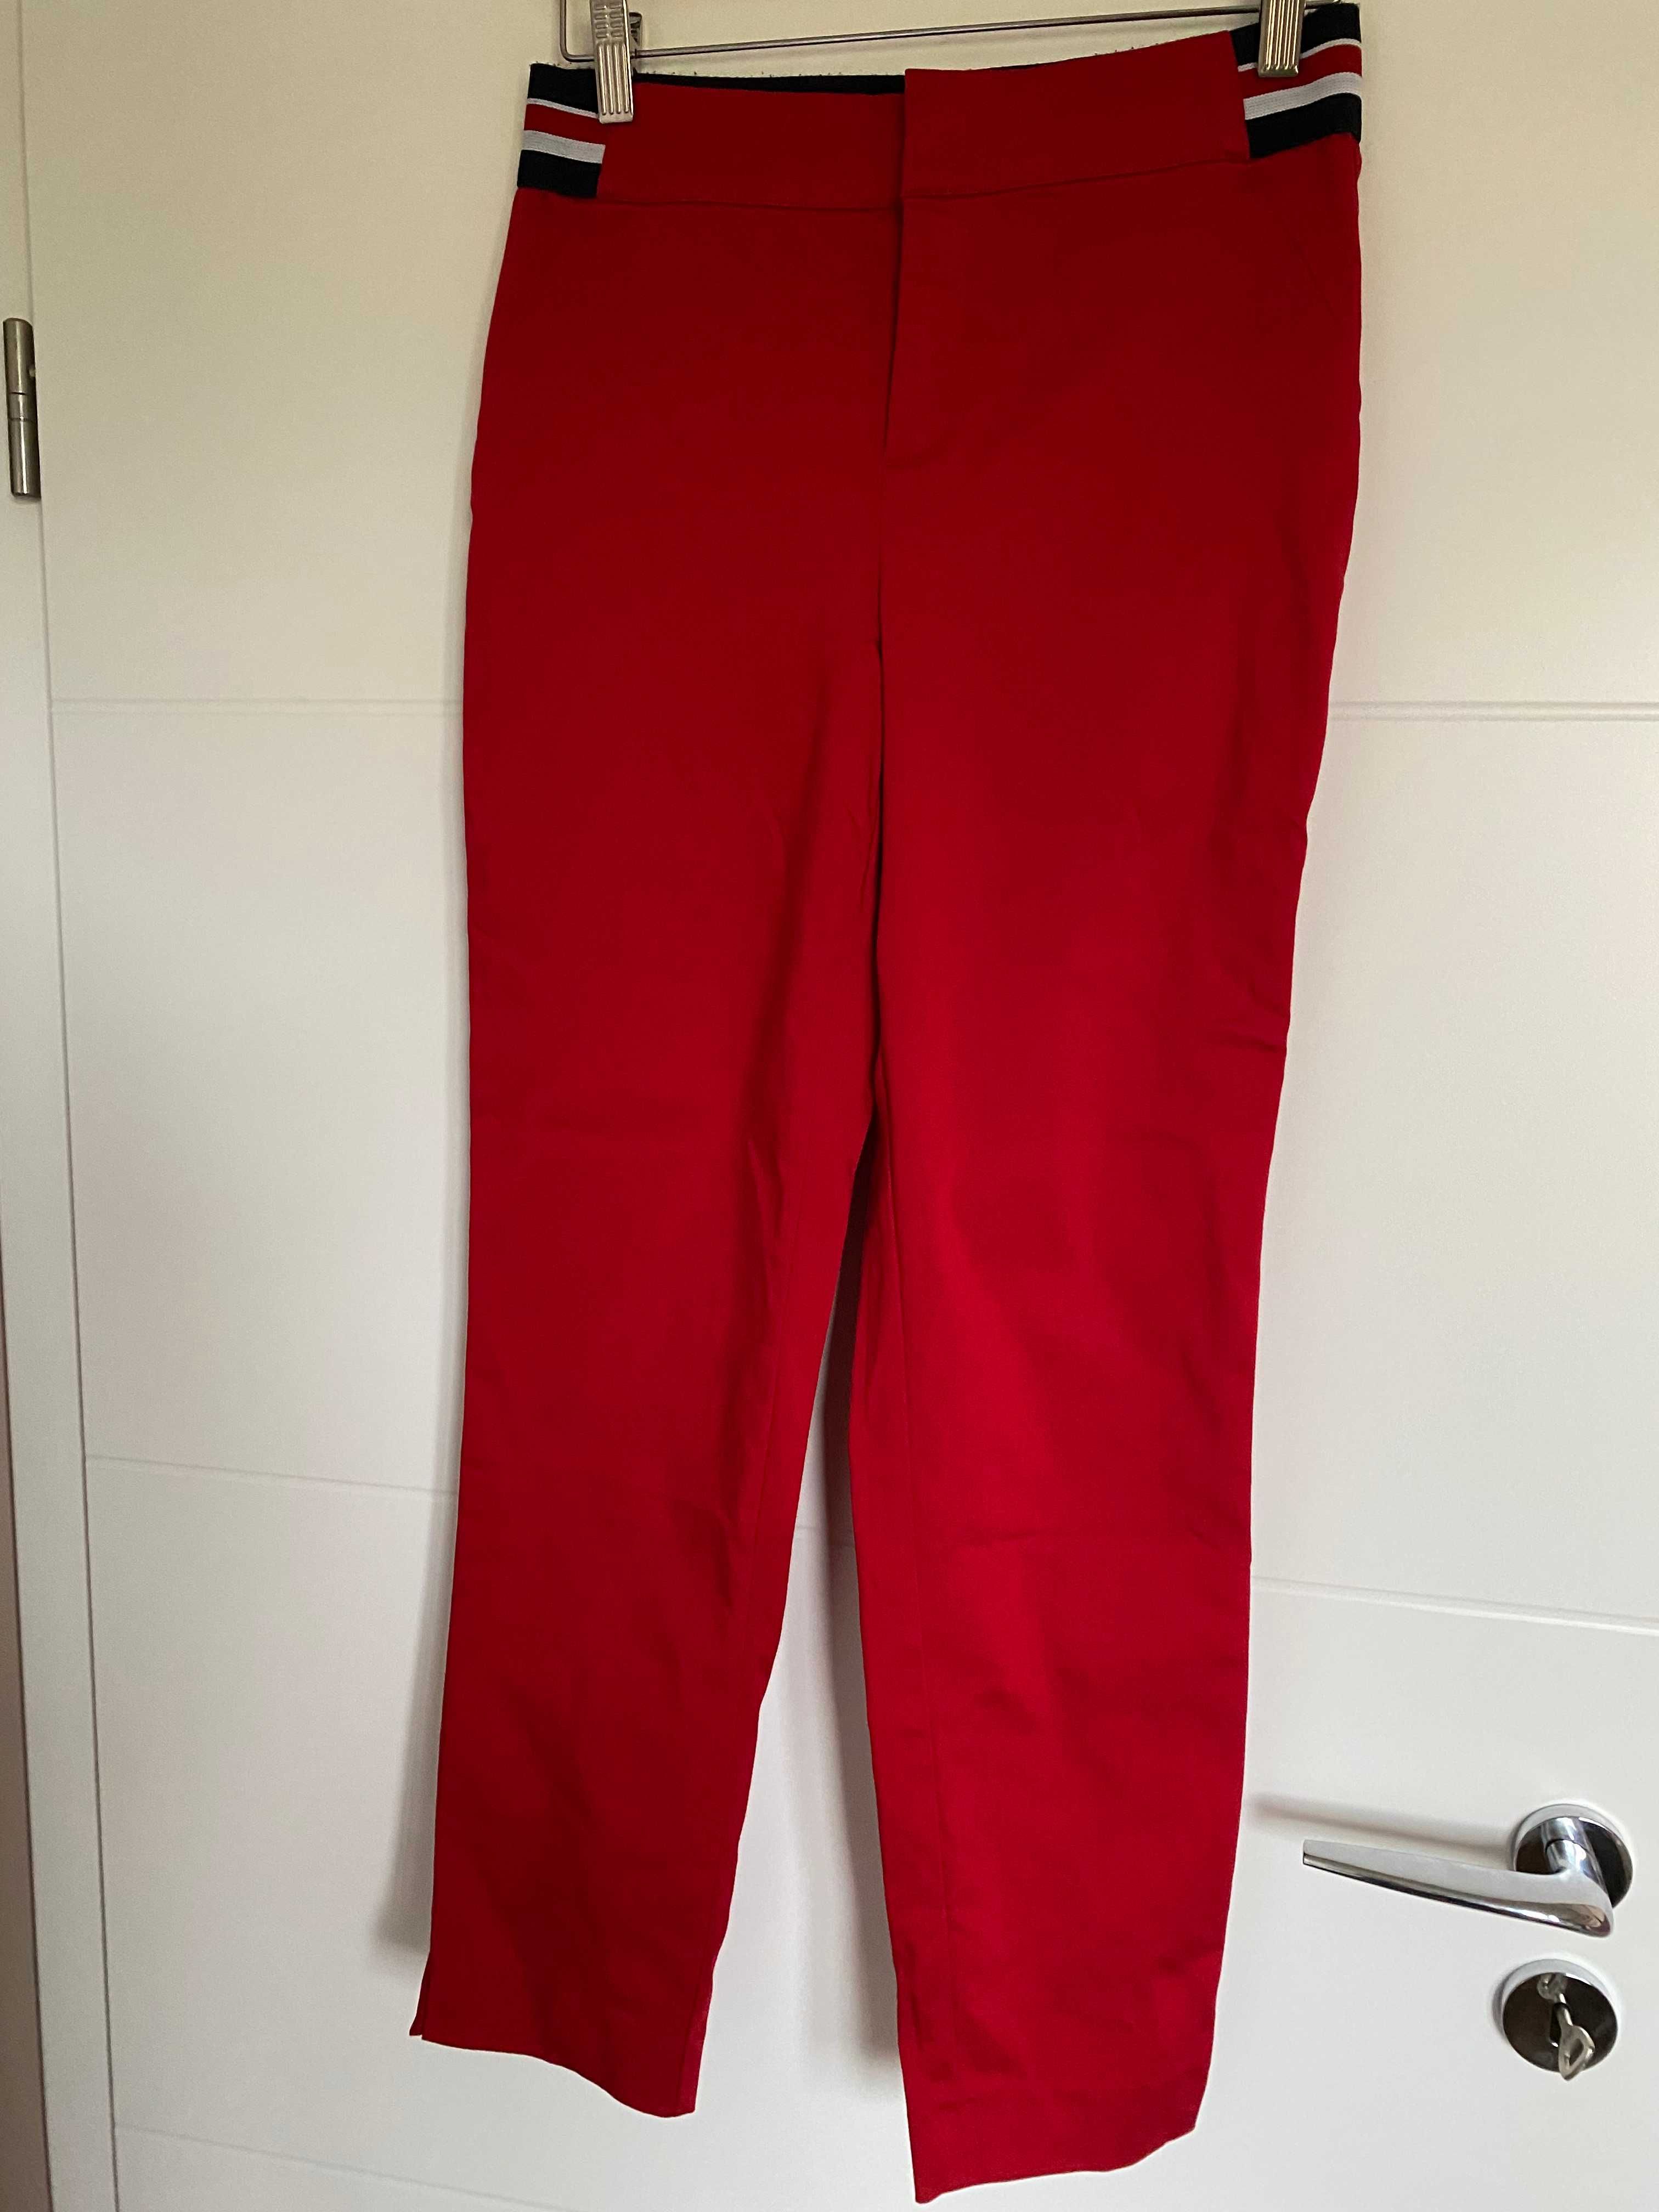 Spodnie Reserved, rozmiar 40, czerwone, ozdobny pas